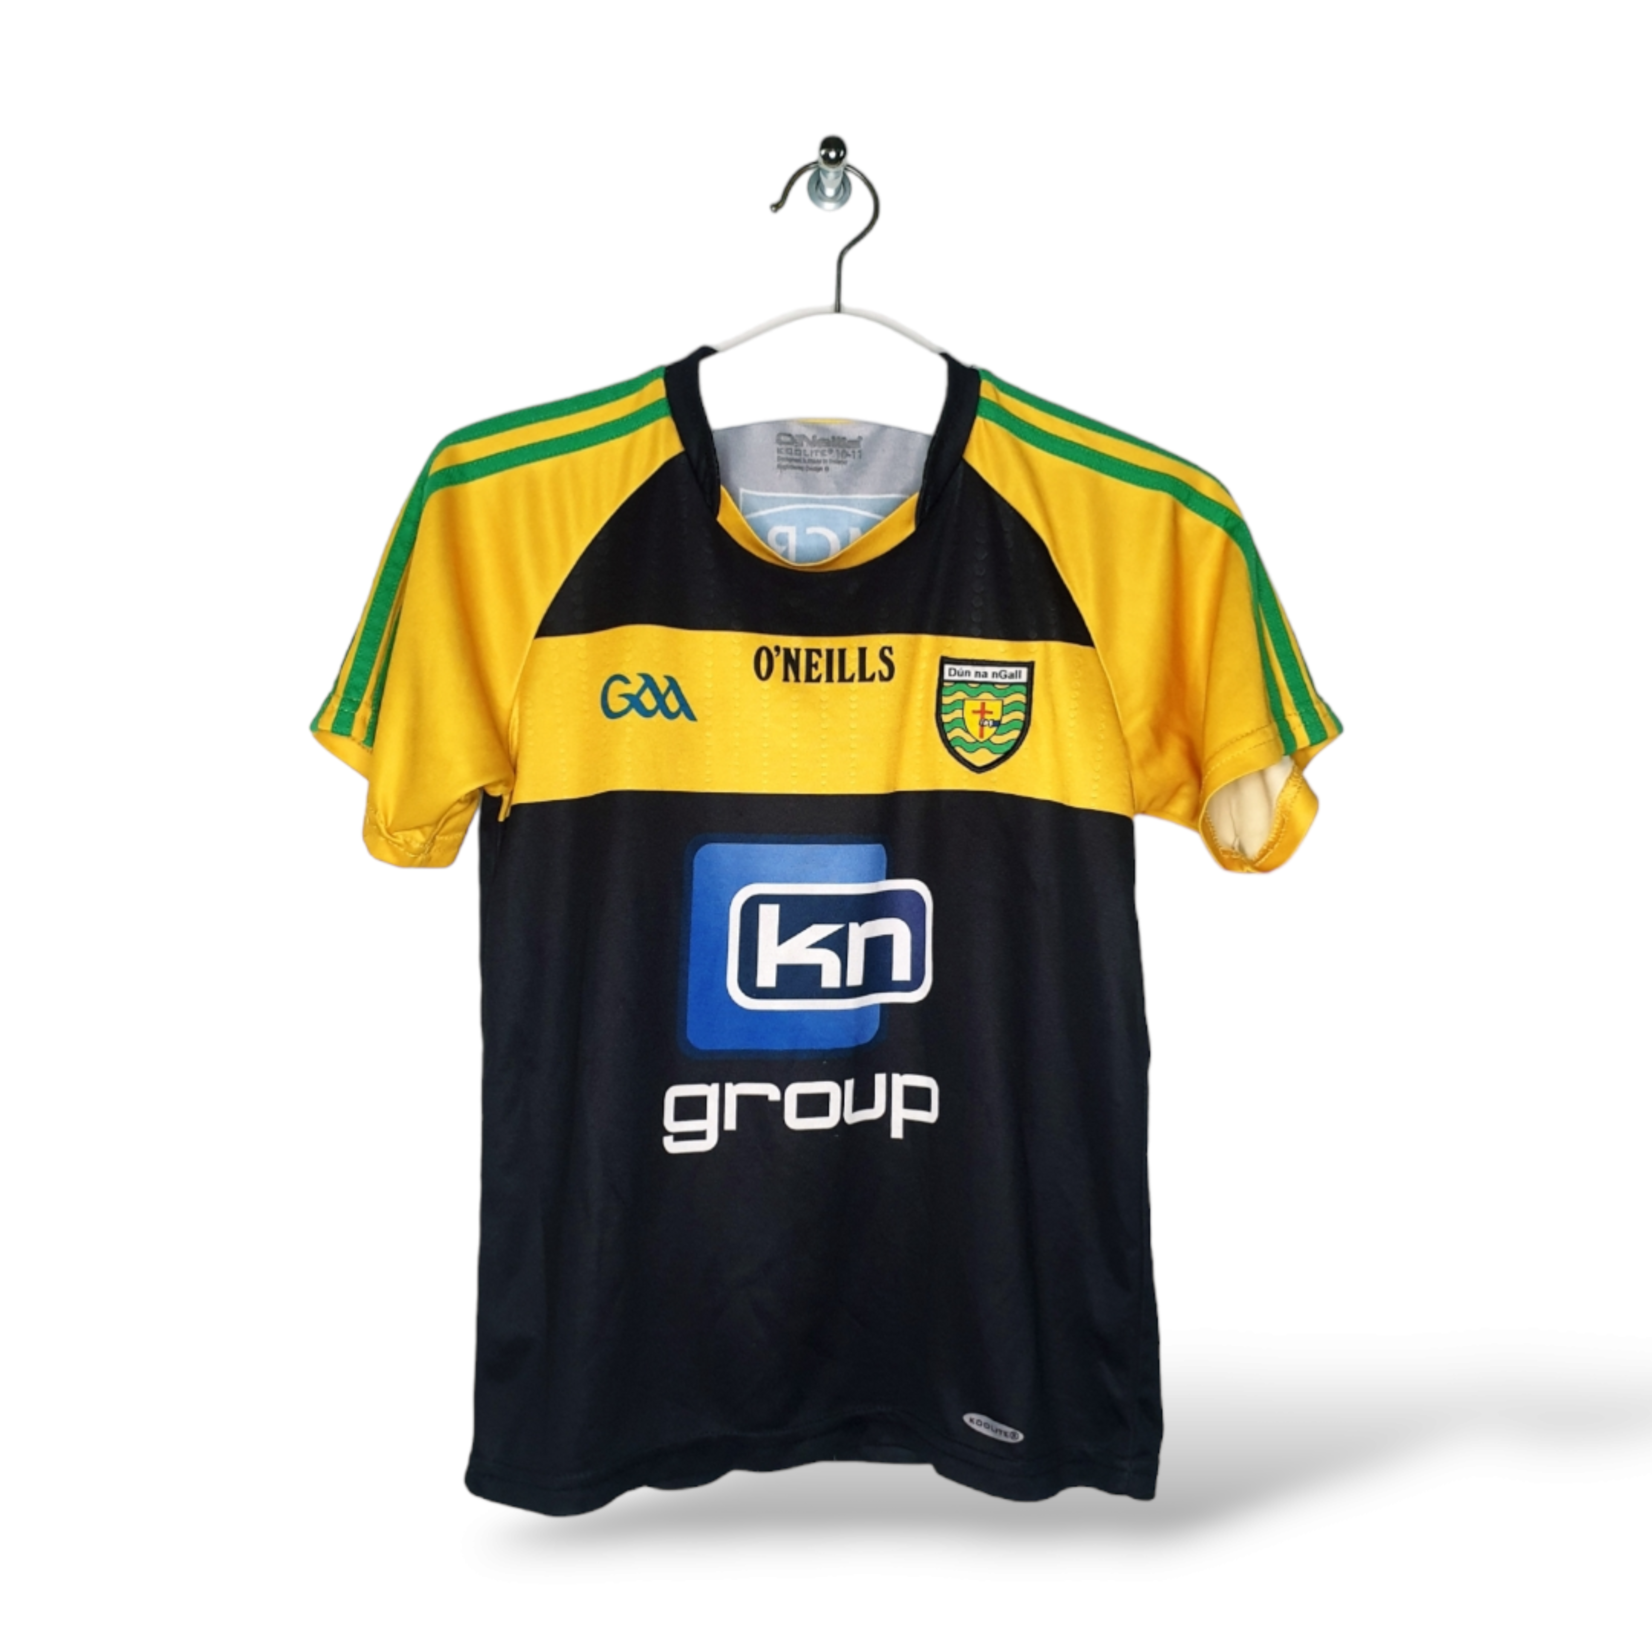 O'Neills Origineel O'Neills Vintage shirt Donegal GAA 2016